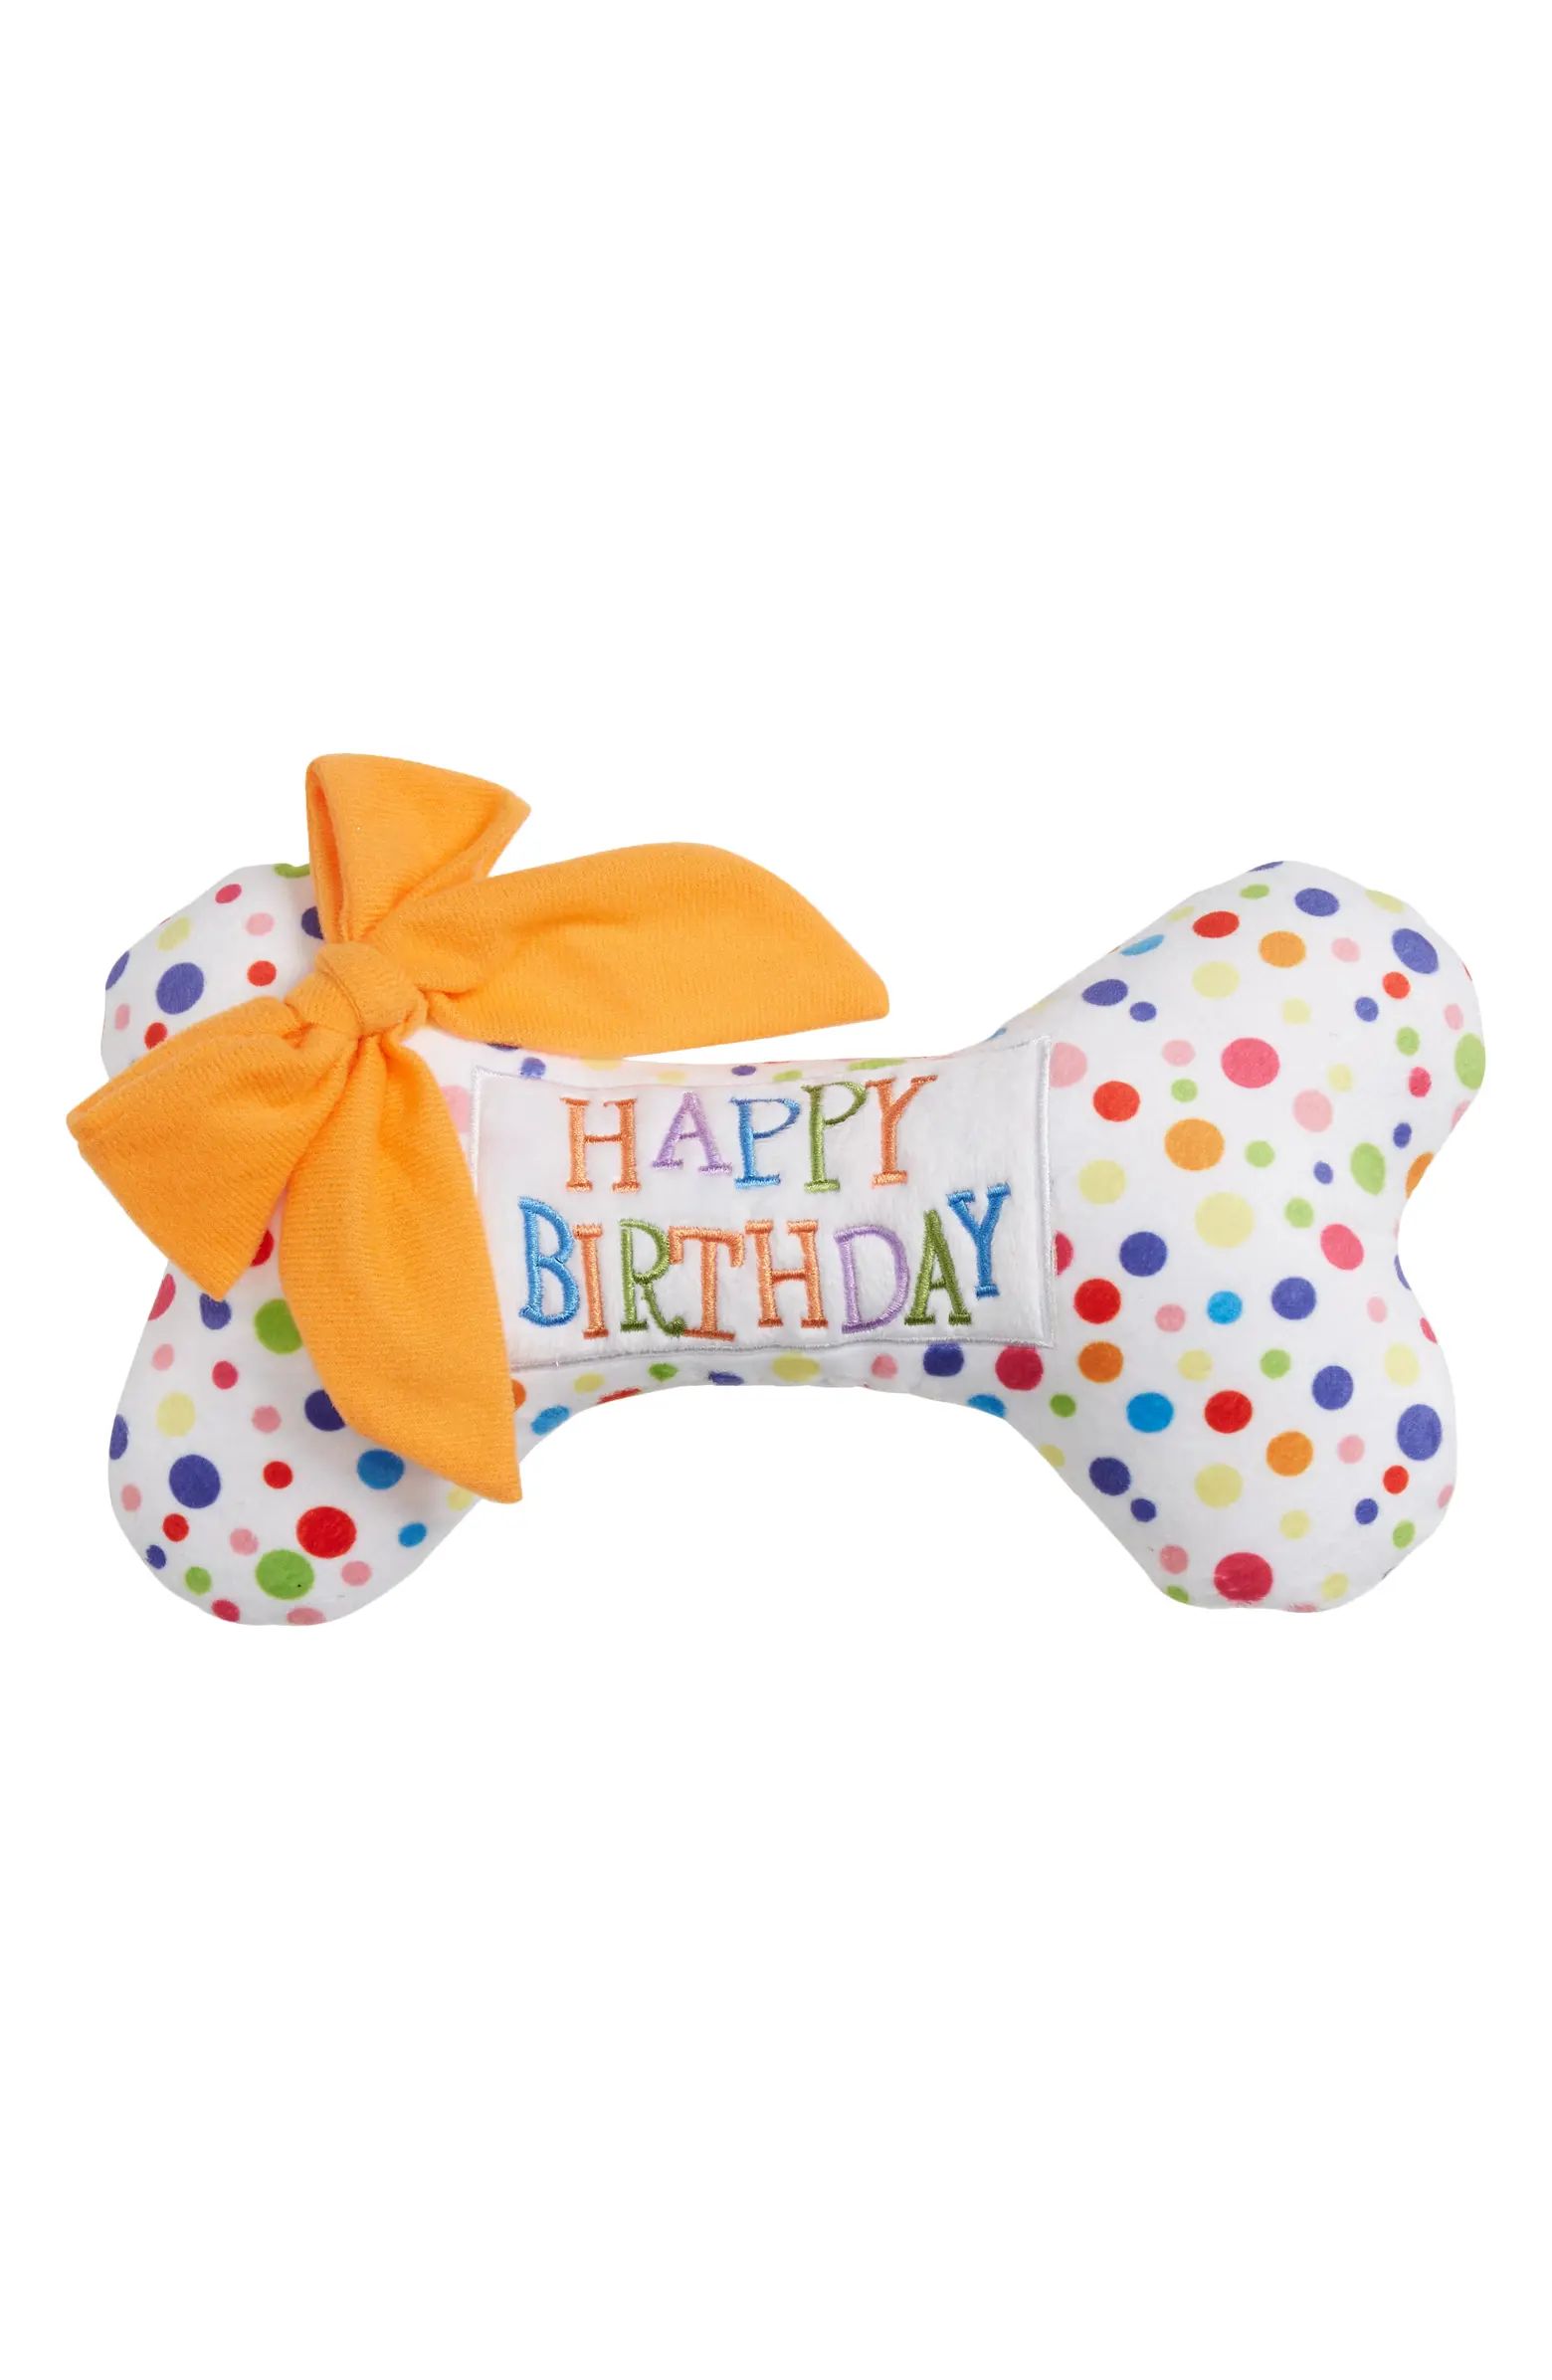 Haute Diggity Dog Happy Birthday Bone Plush Toy | Nordstrom | Nordstrom